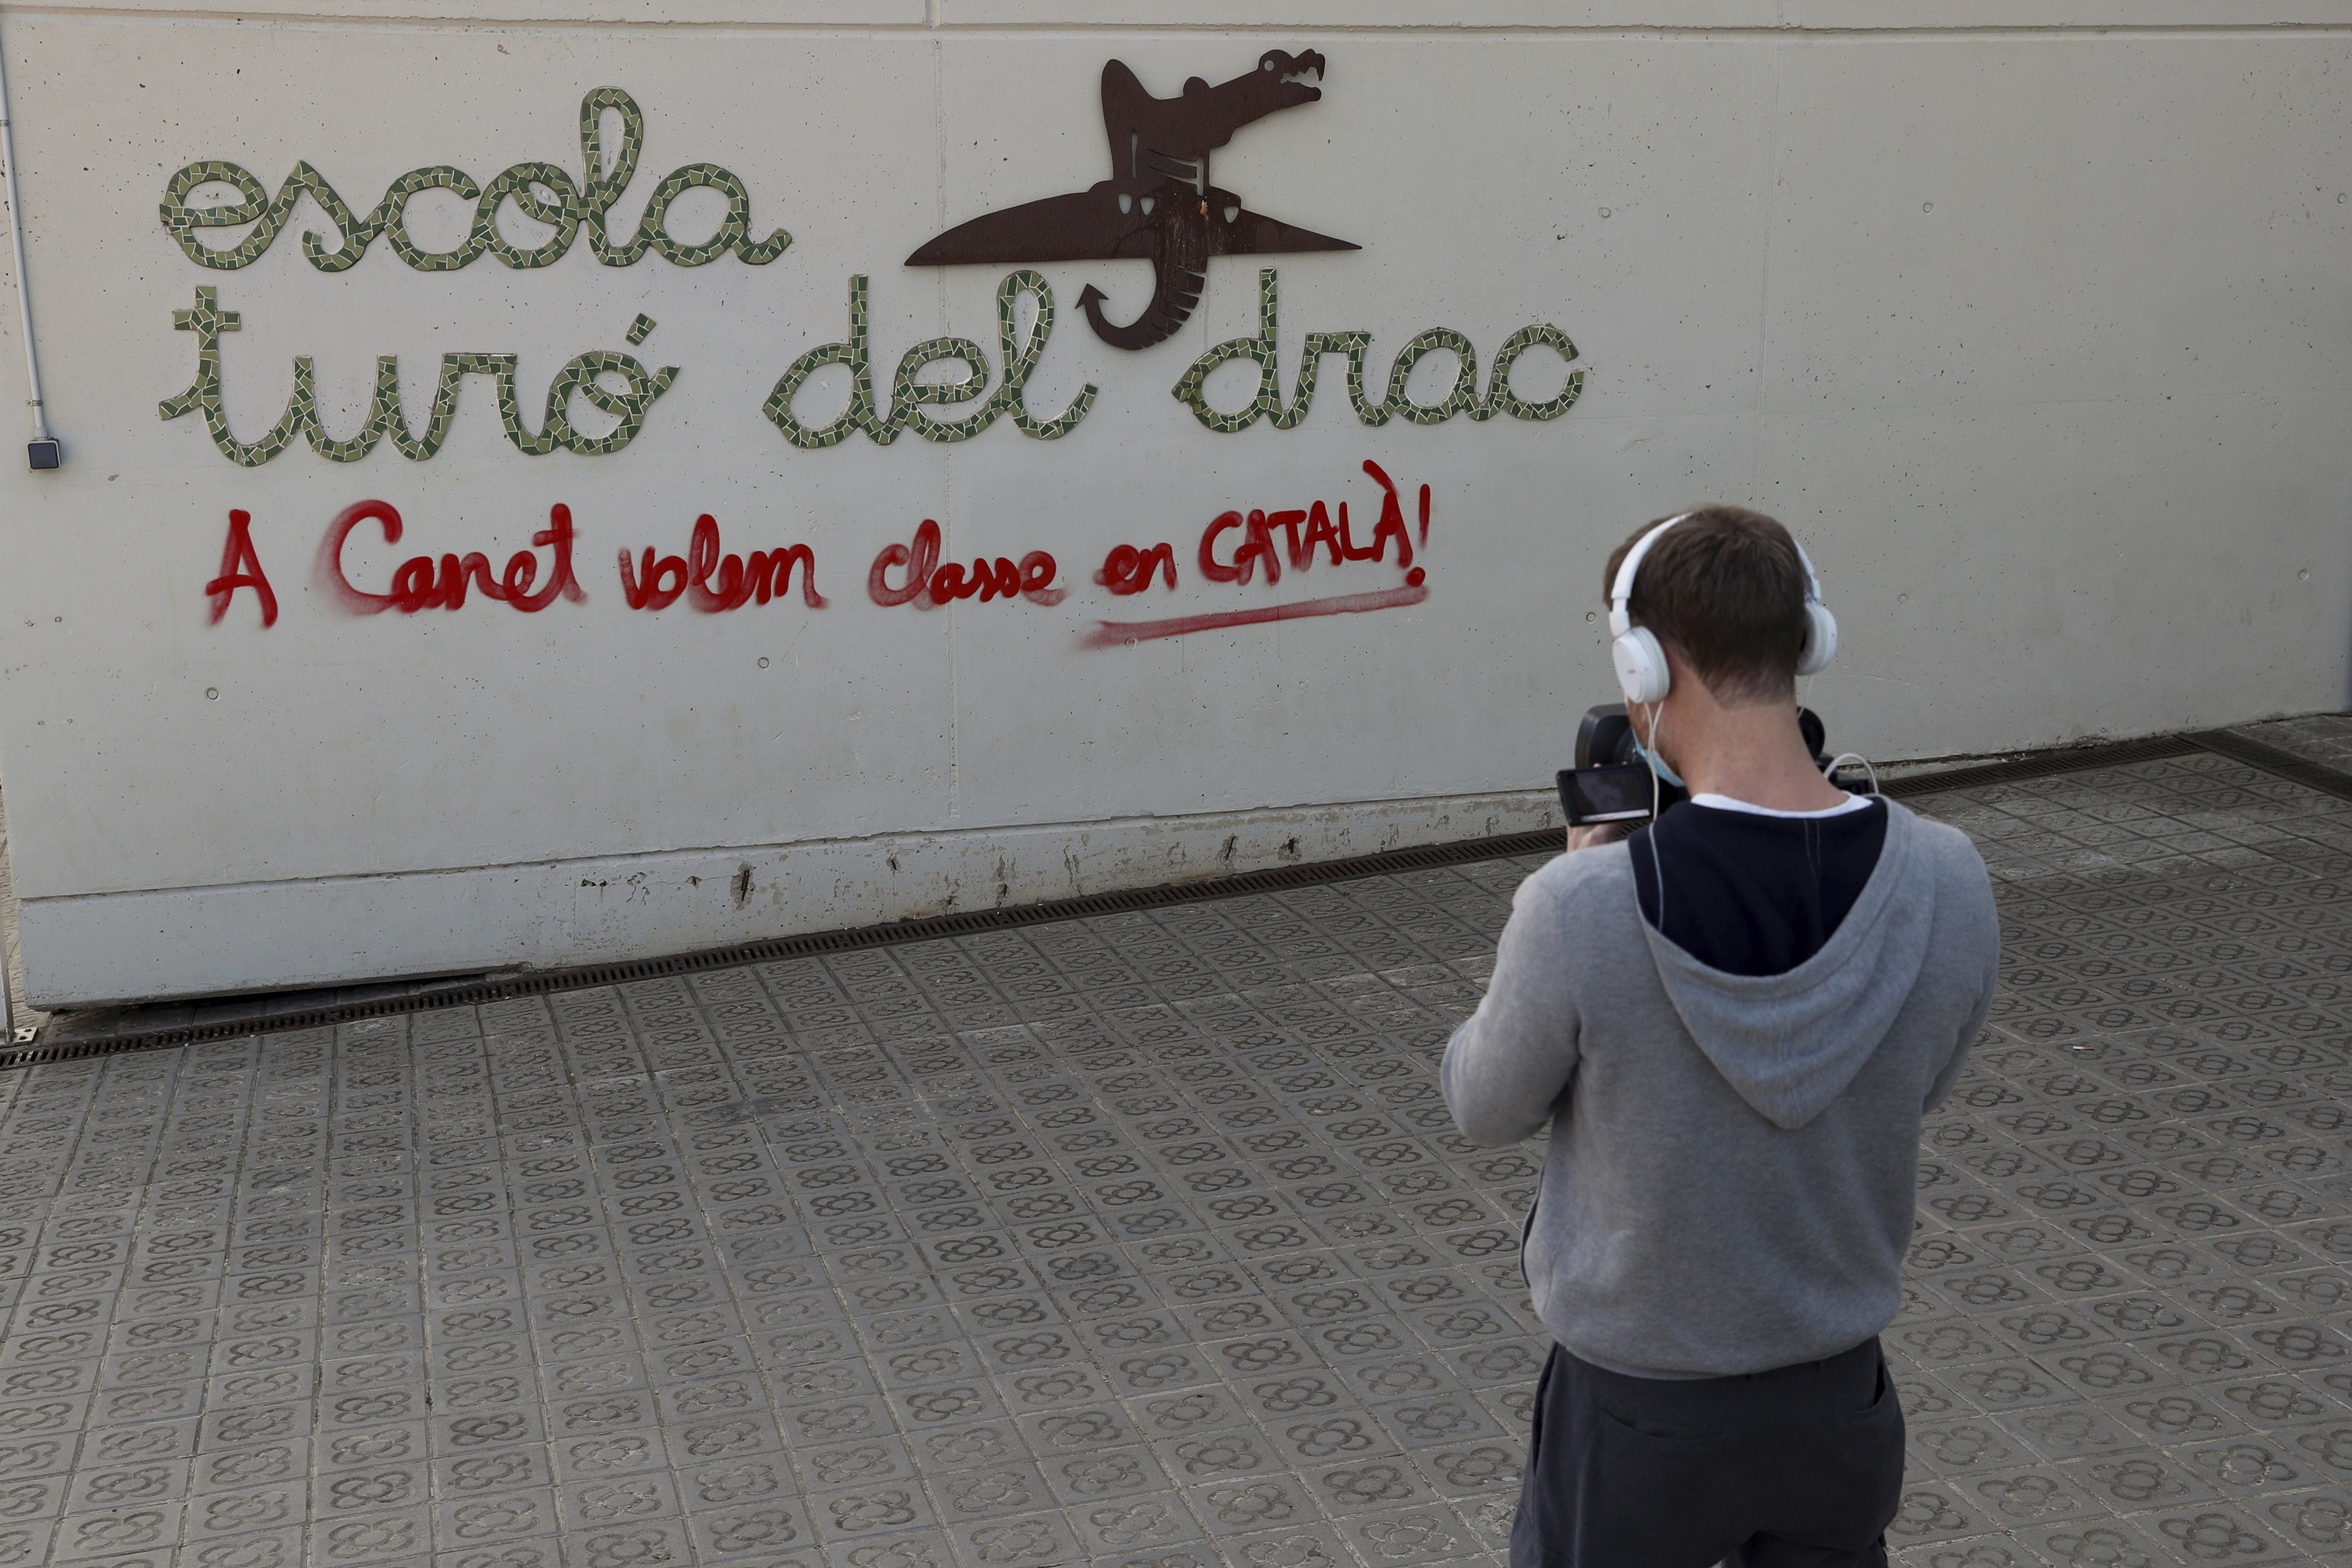 Pintada a favor de la escuela en cataln en Canet de Mar, donde una familia fue acosada por pedir ms espaol.